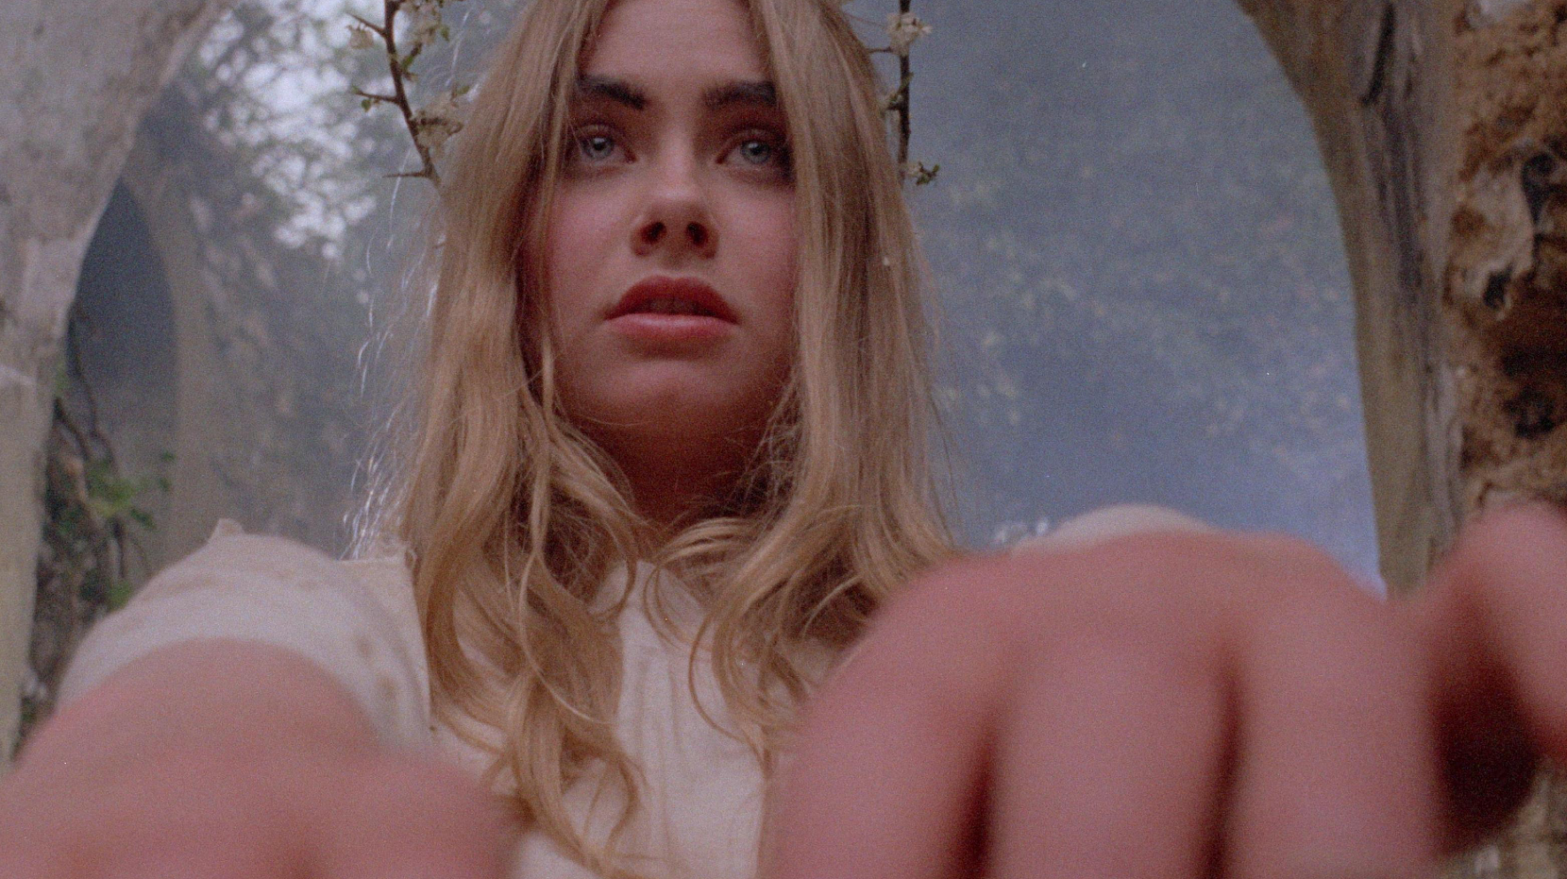 Angel Blake (Linda Hayden) in Piers Haggard's Blood on Satan's Claw (1971) (Image: Severin Films)